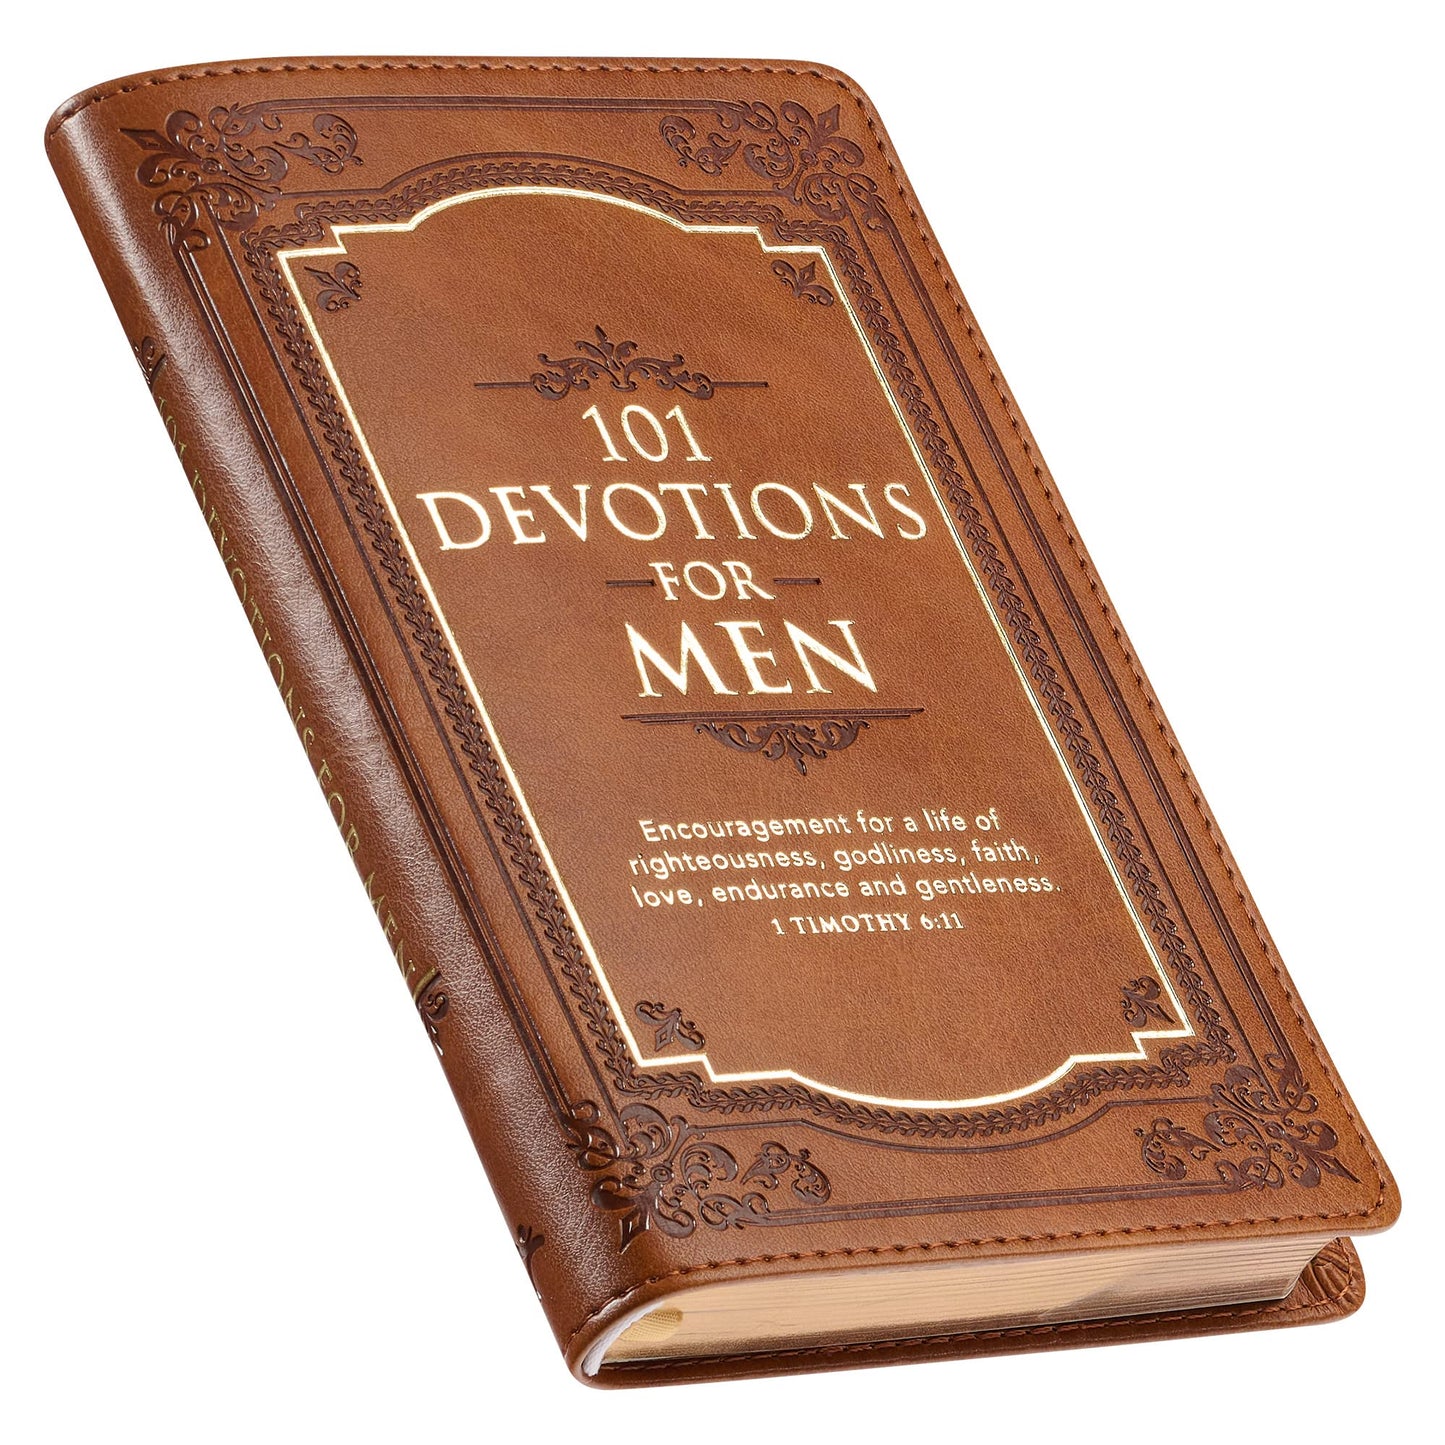 101 Devotions For Men